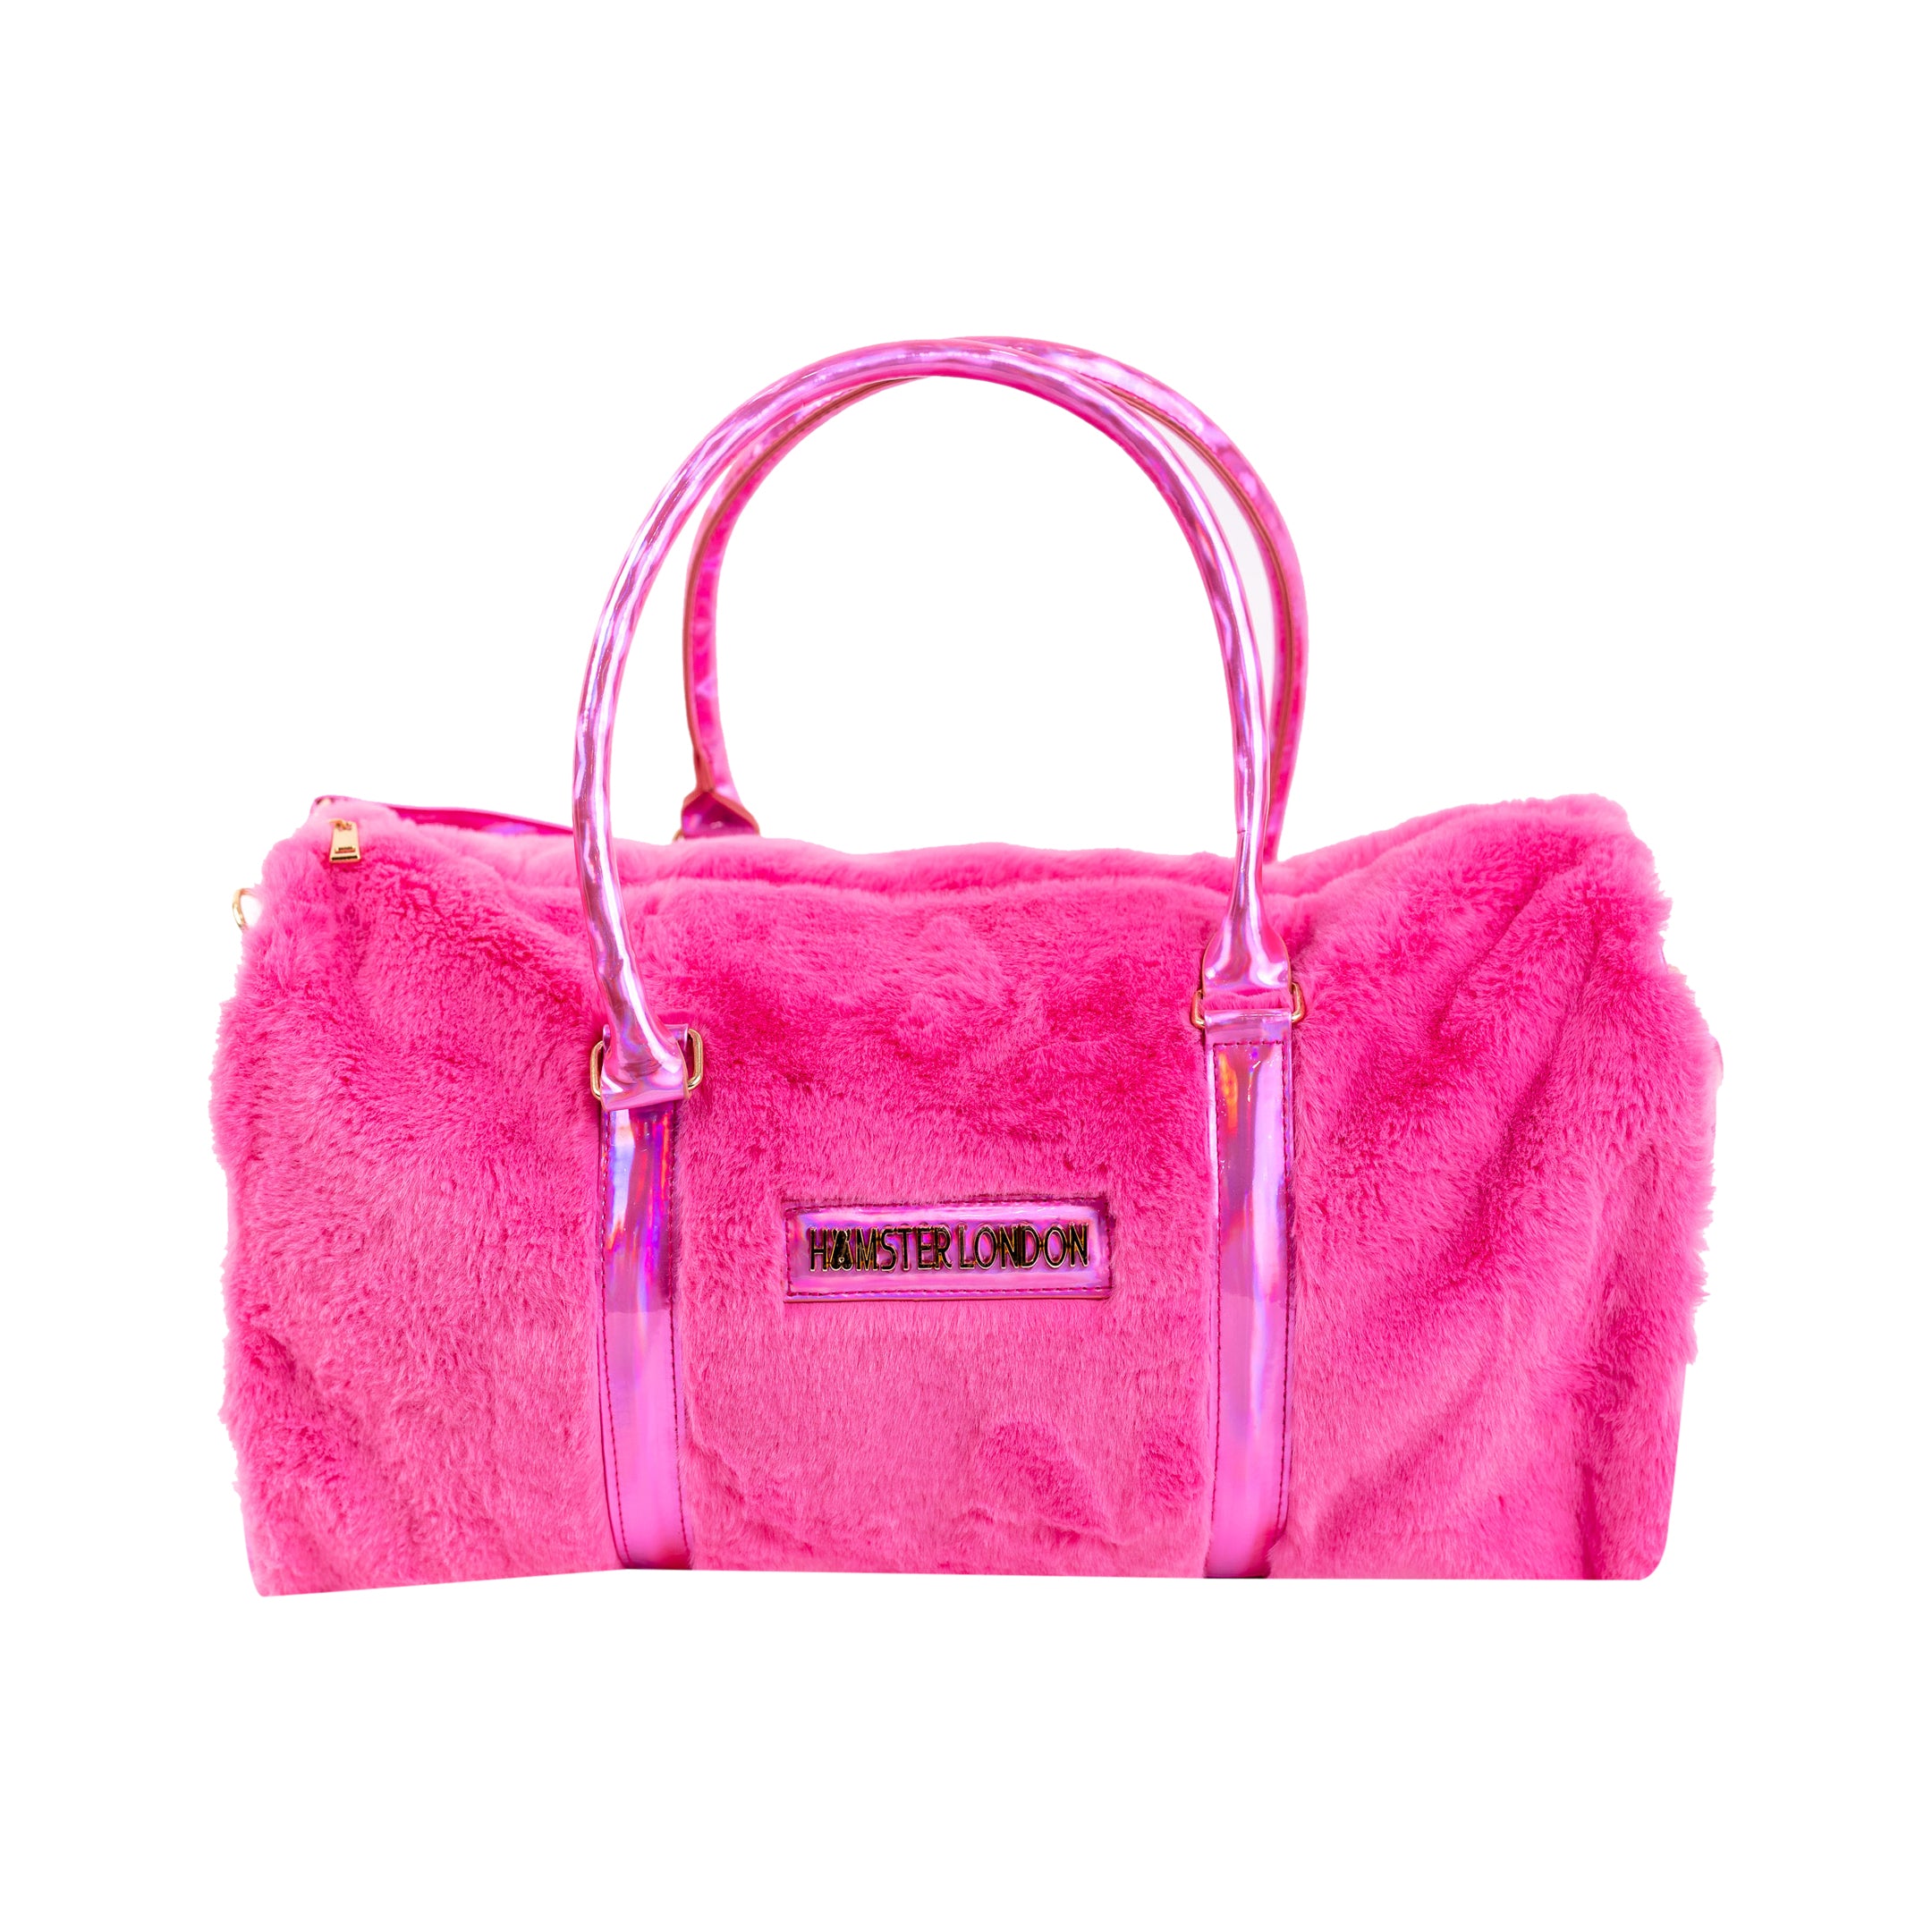 Hamster Fur Baby Duffle Bag Pink